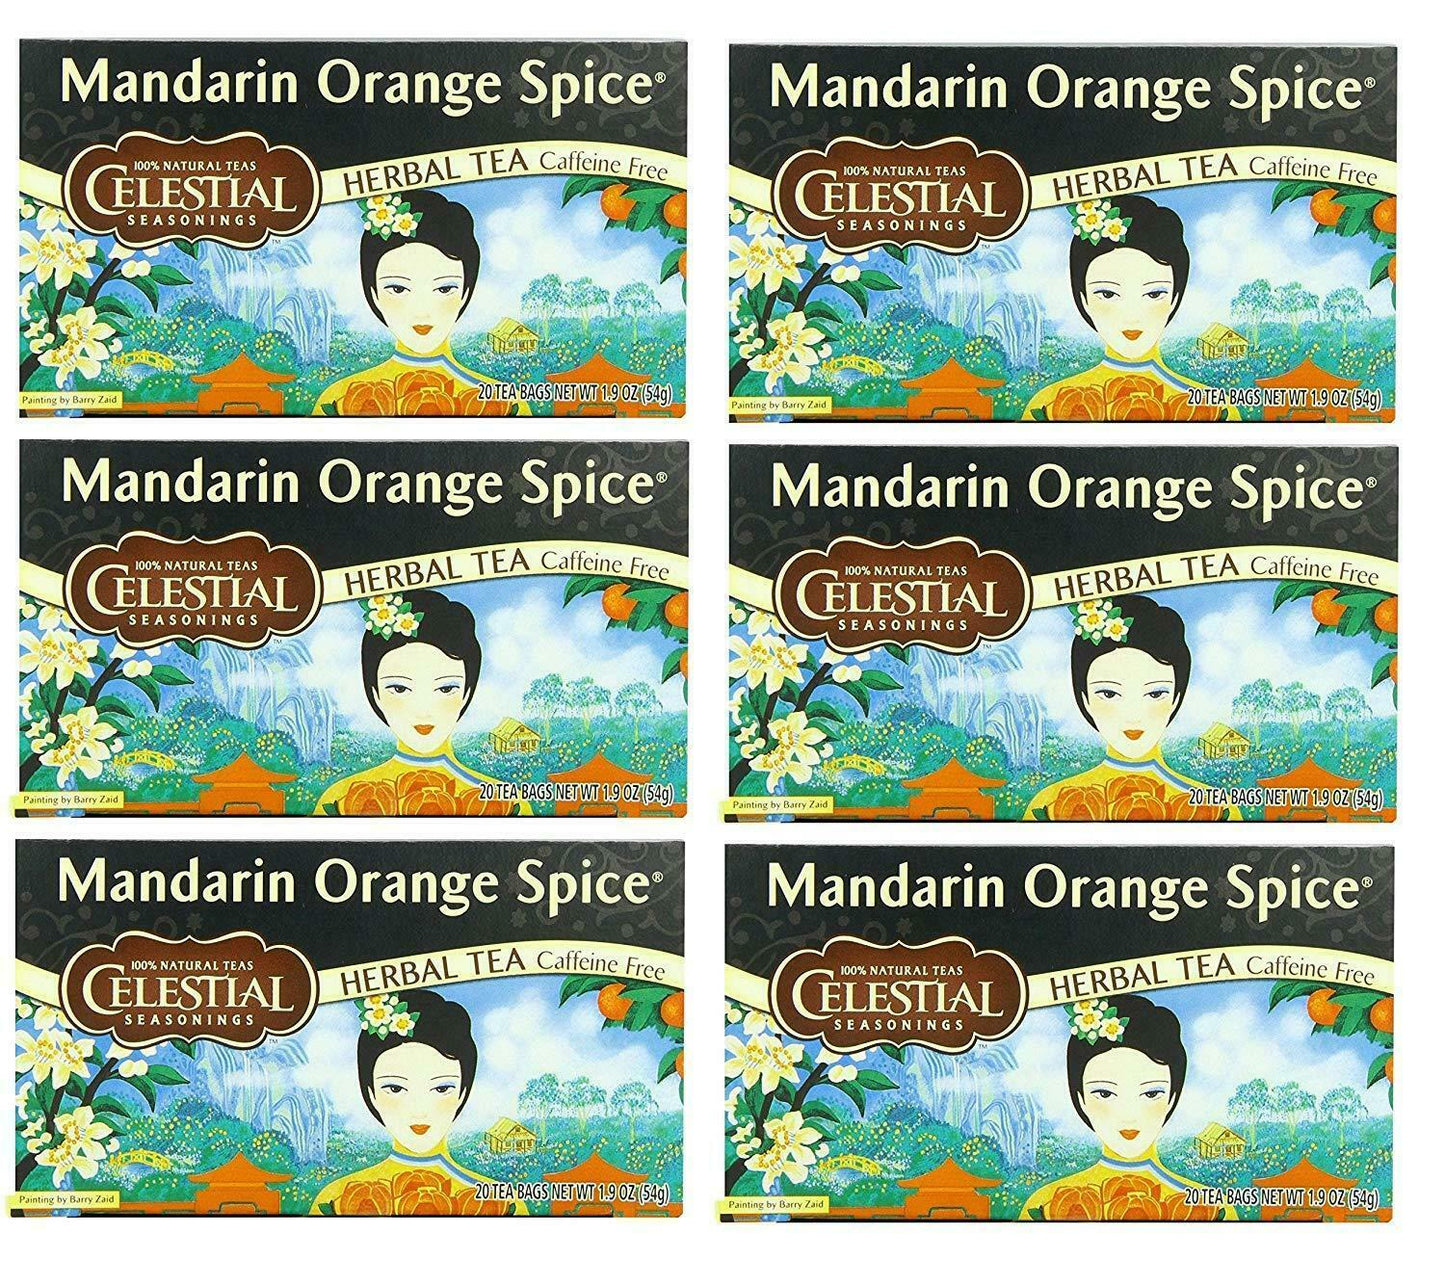 Celestial Seasonings Mandarin Orange Spice Tea 20 bags PACK OF 6 Herbal Infusion